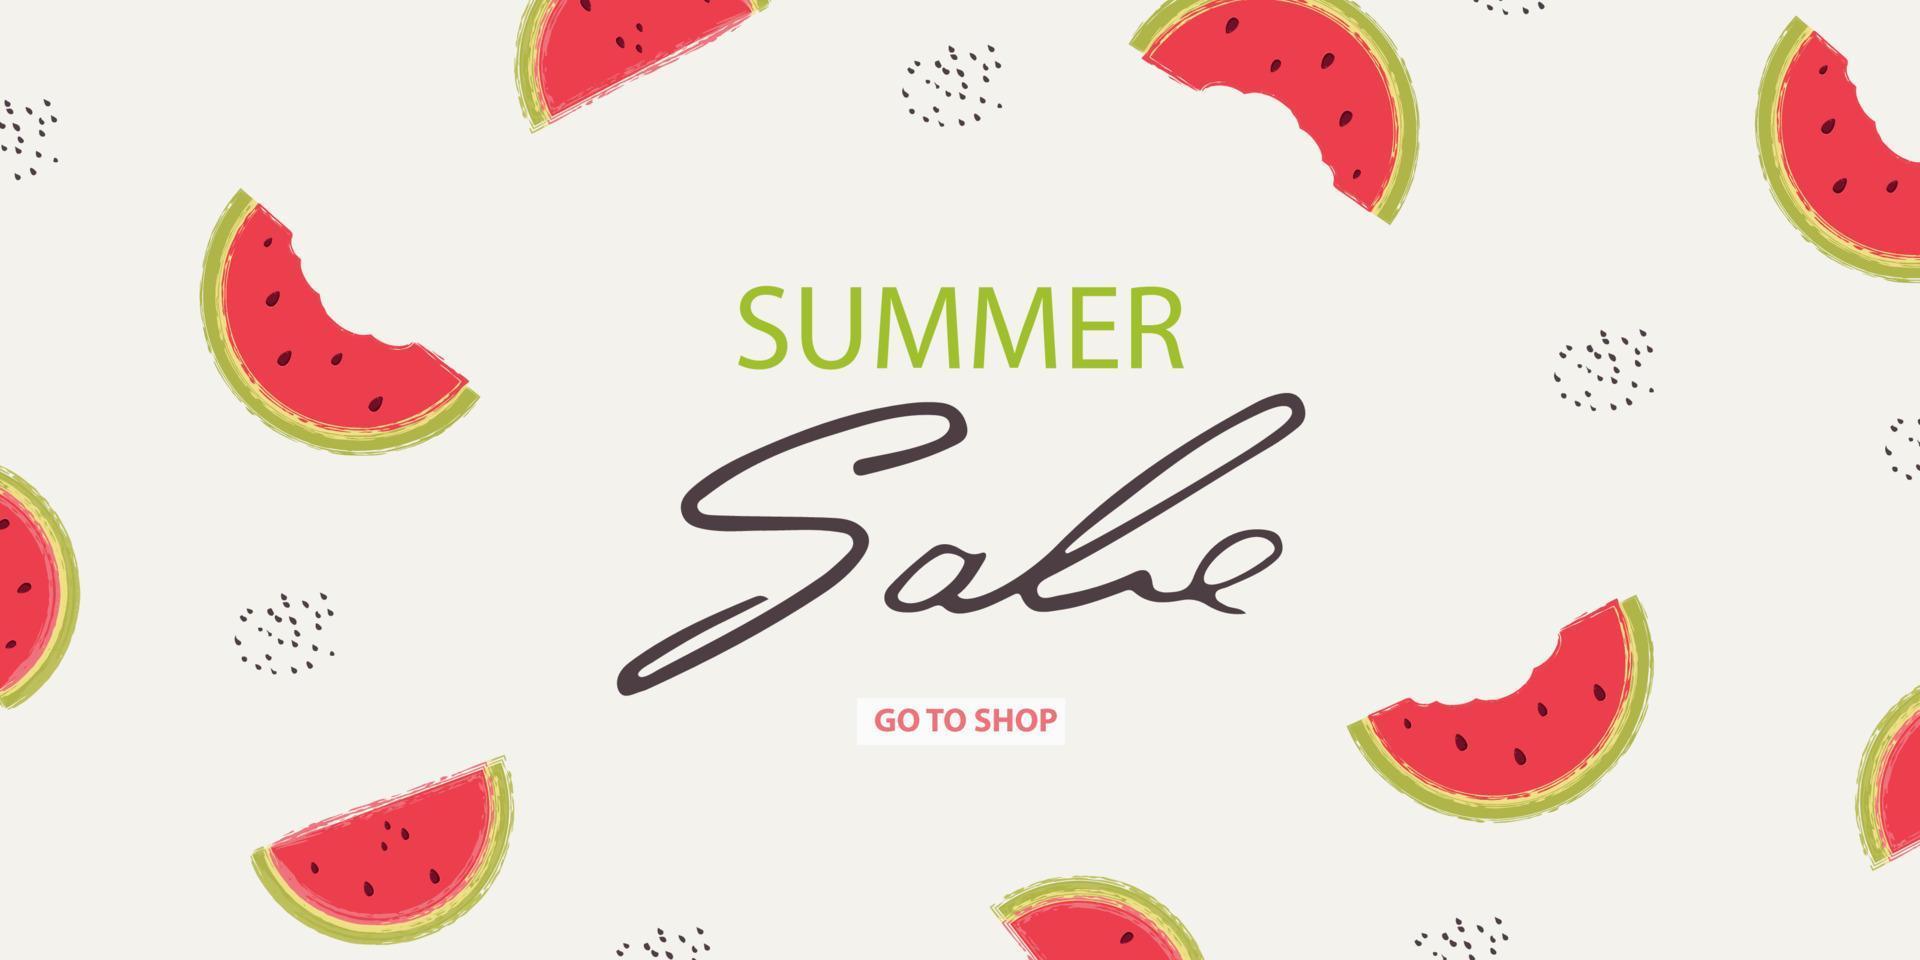 banner de venda de verão com uma fatia de melancia sobre um fundo claro. ilustração em vetor de imitação de pincel